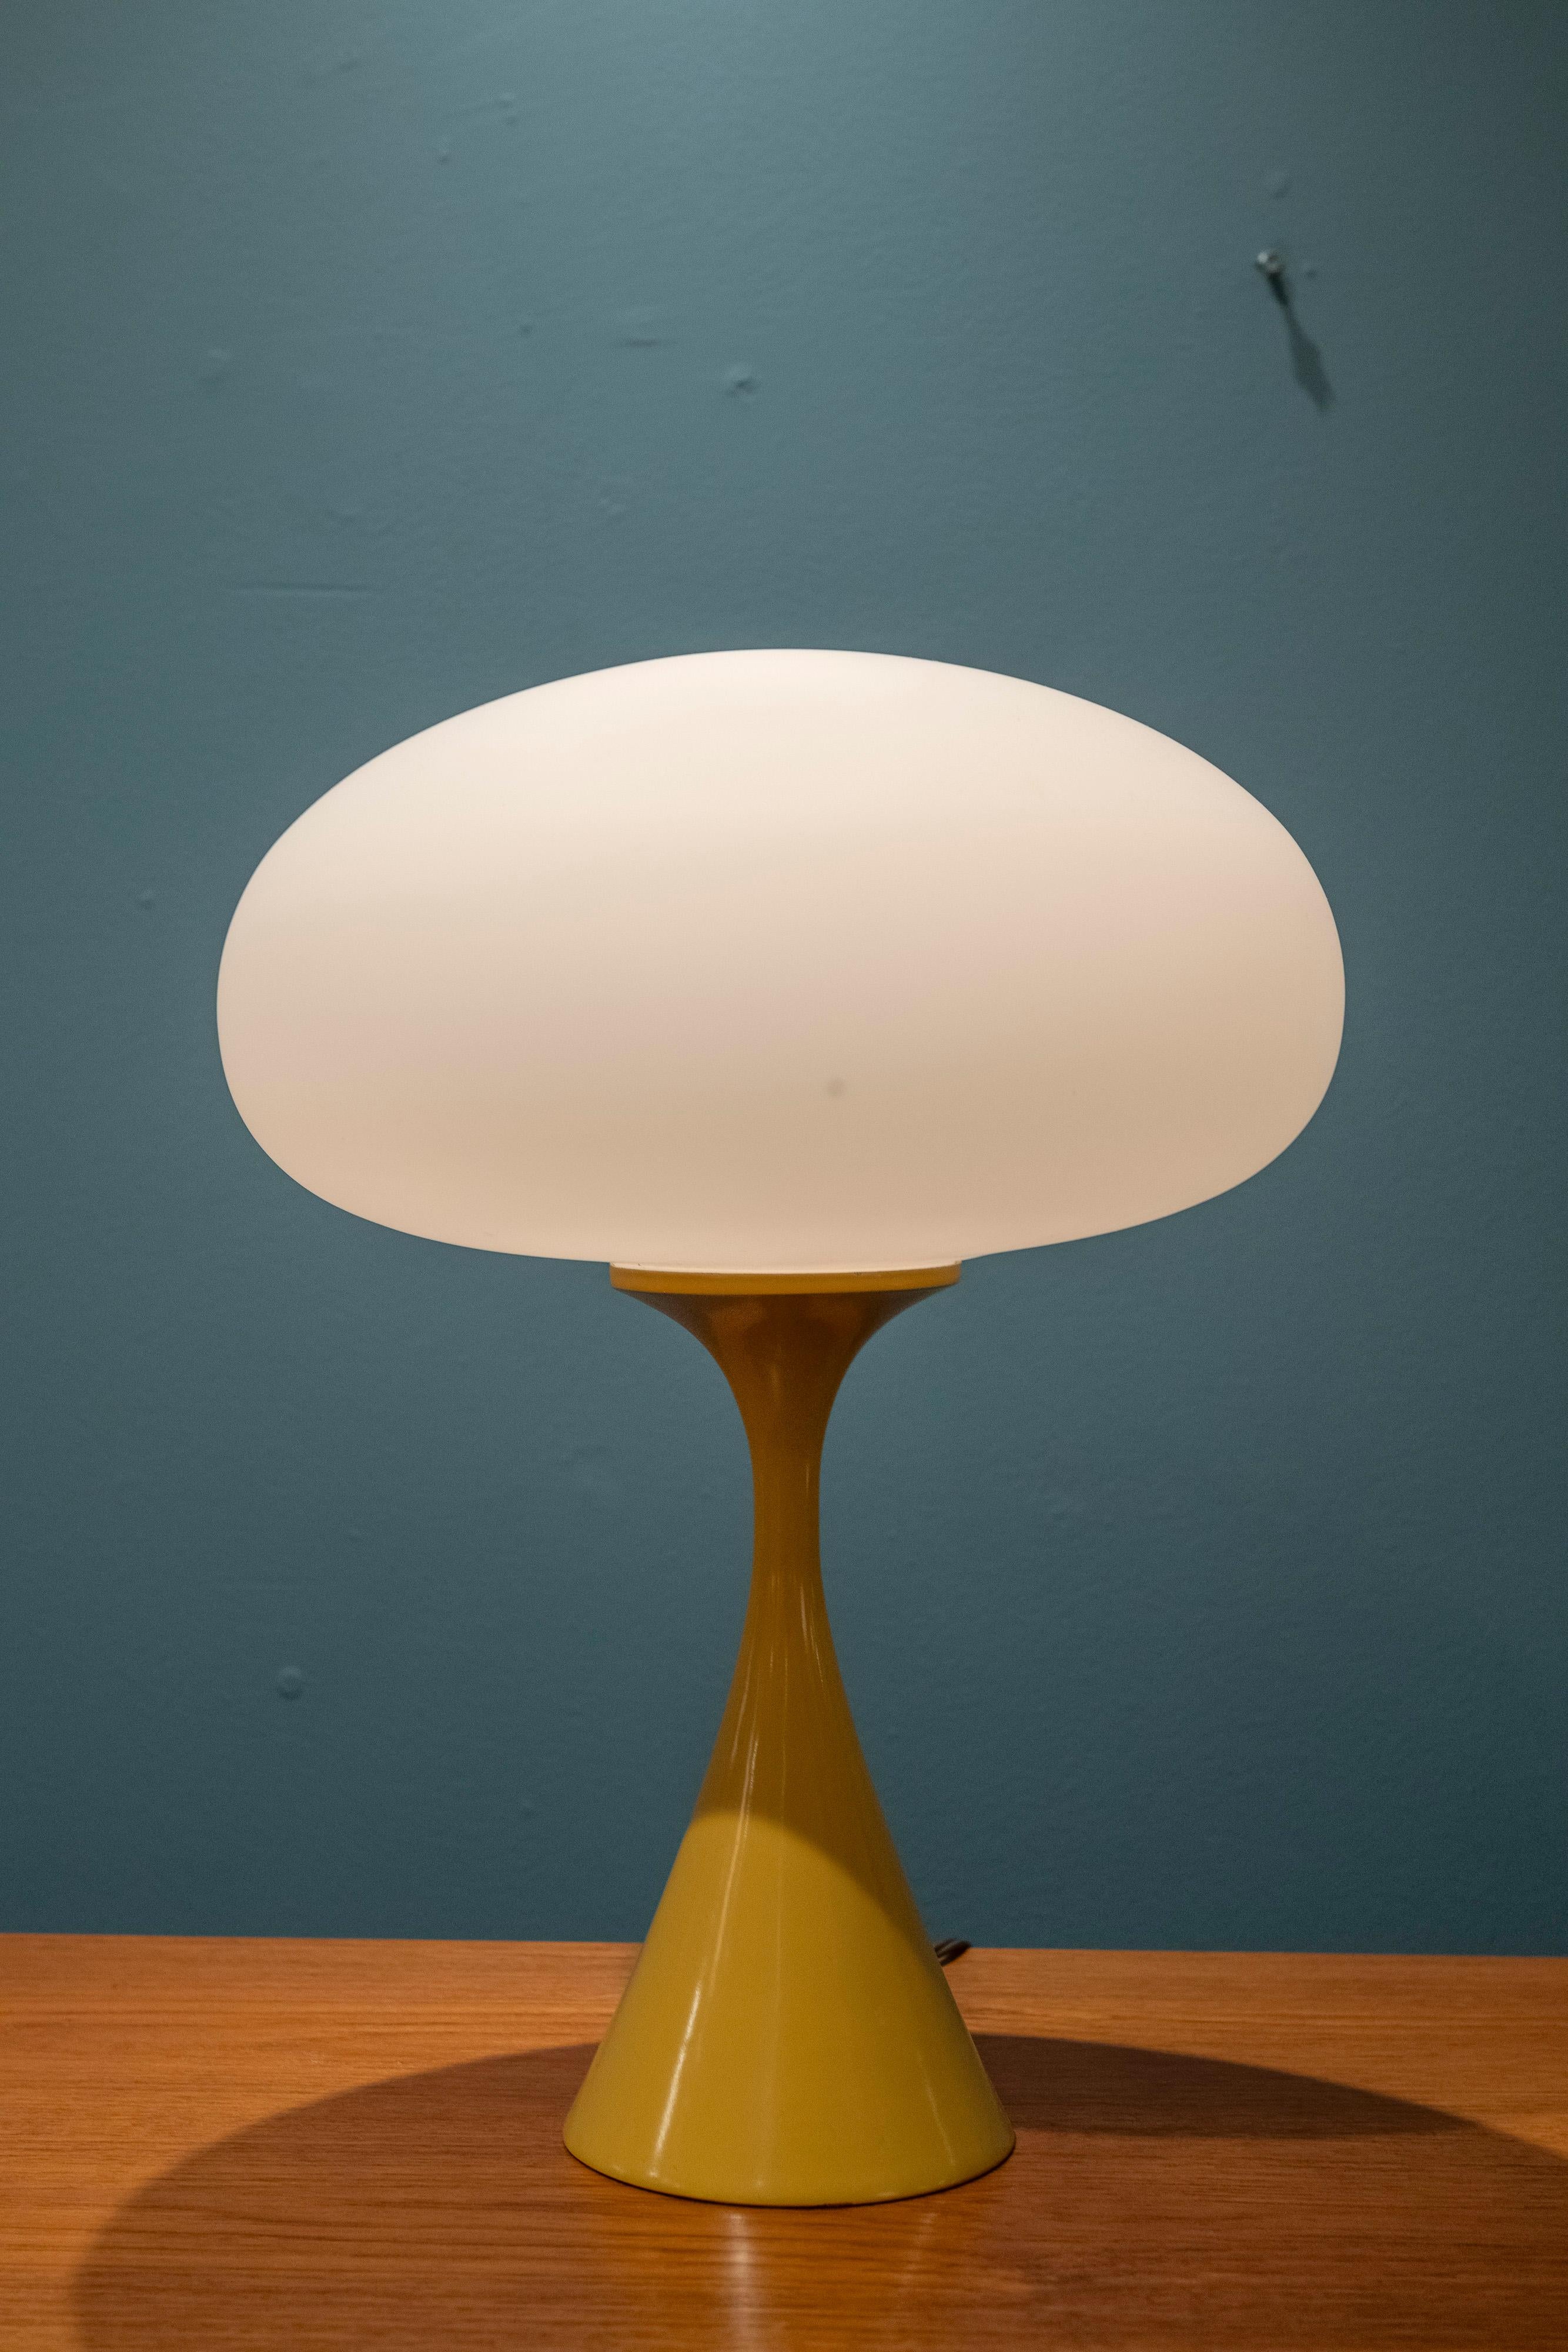 Original lampe champignon Laurel vintage, U.S.A. Magnifique base peinte en jaune dijon avec un interrupteur à trois voies. En très bon état et fonctionne comme prévu. Prêt à être installé et apprécié.